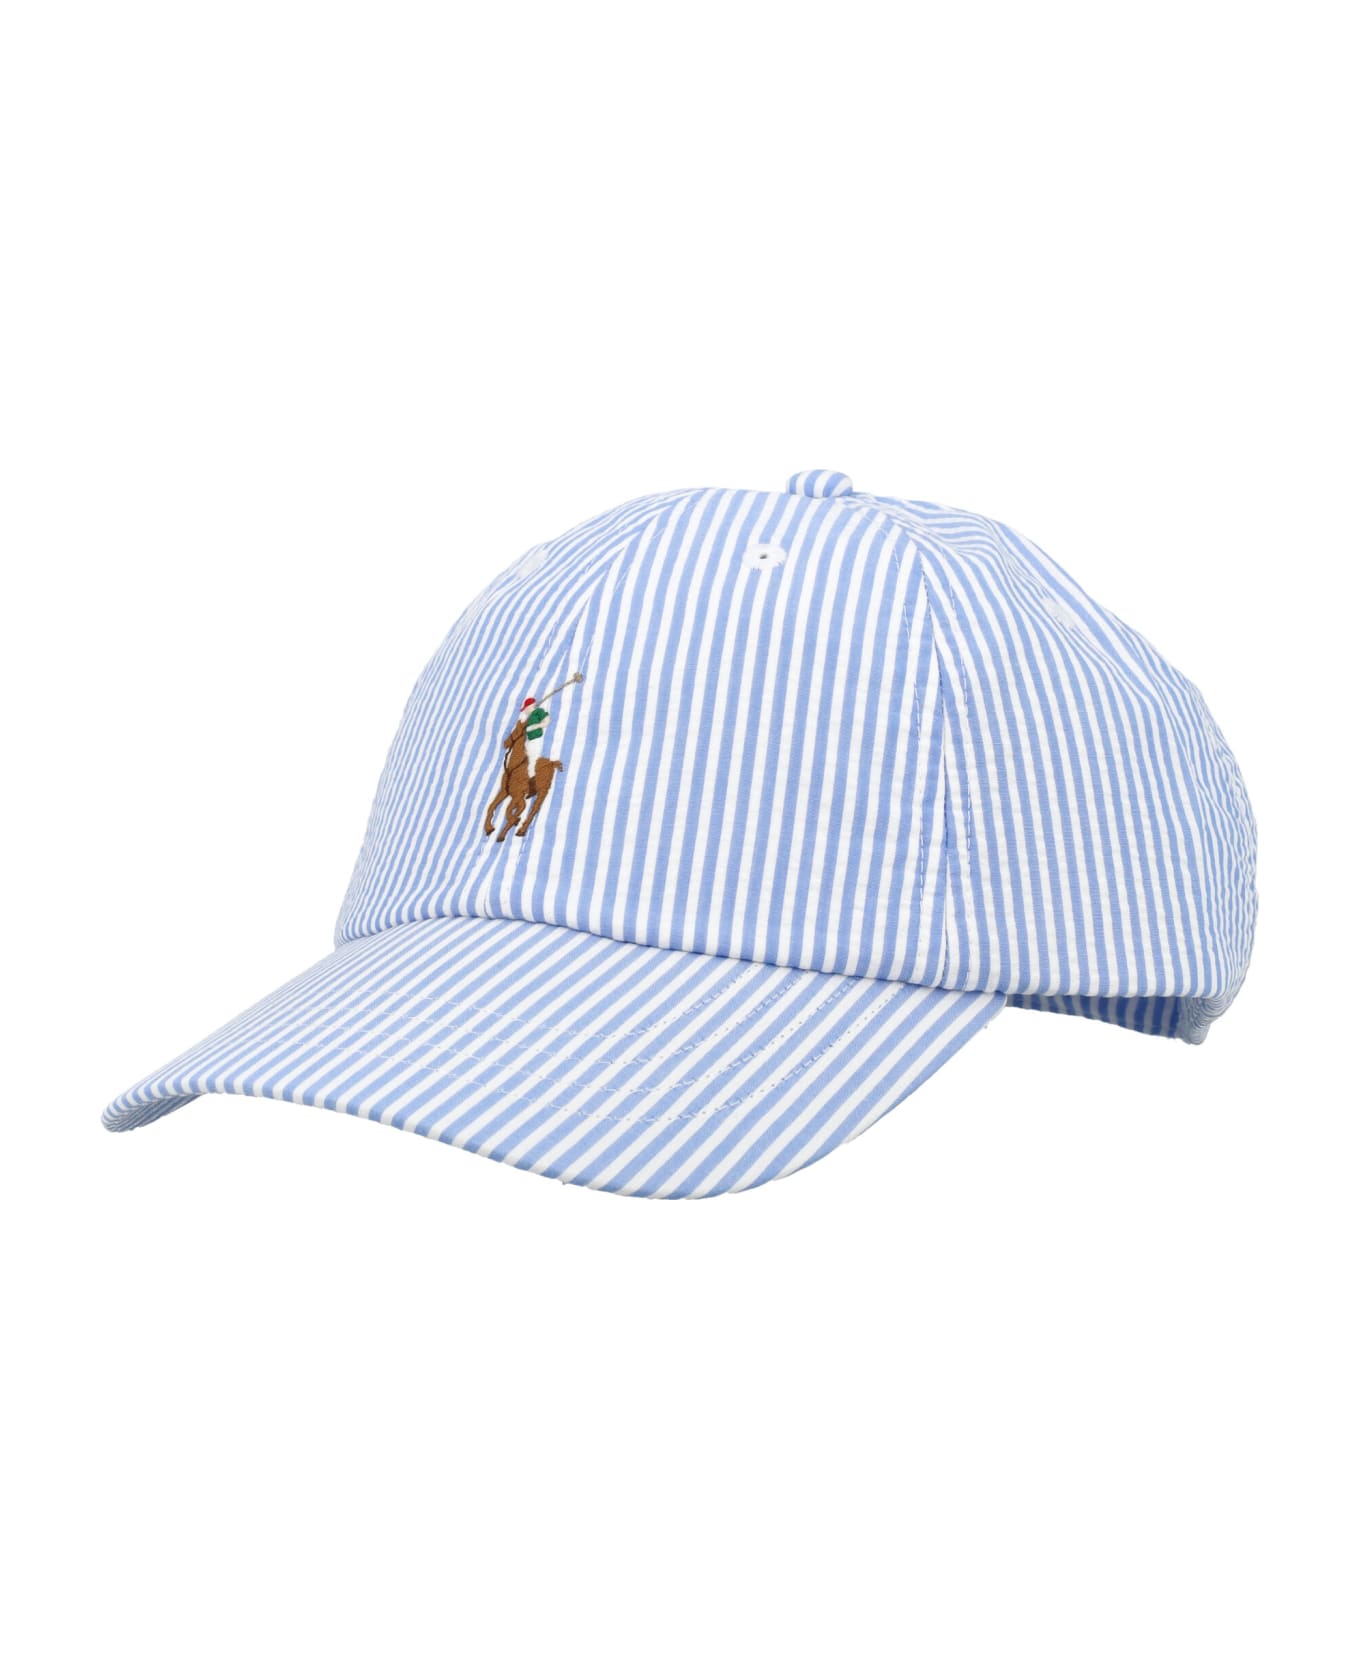 Polo Ralph Lauren Baseball Cap - LIGHT BLUE